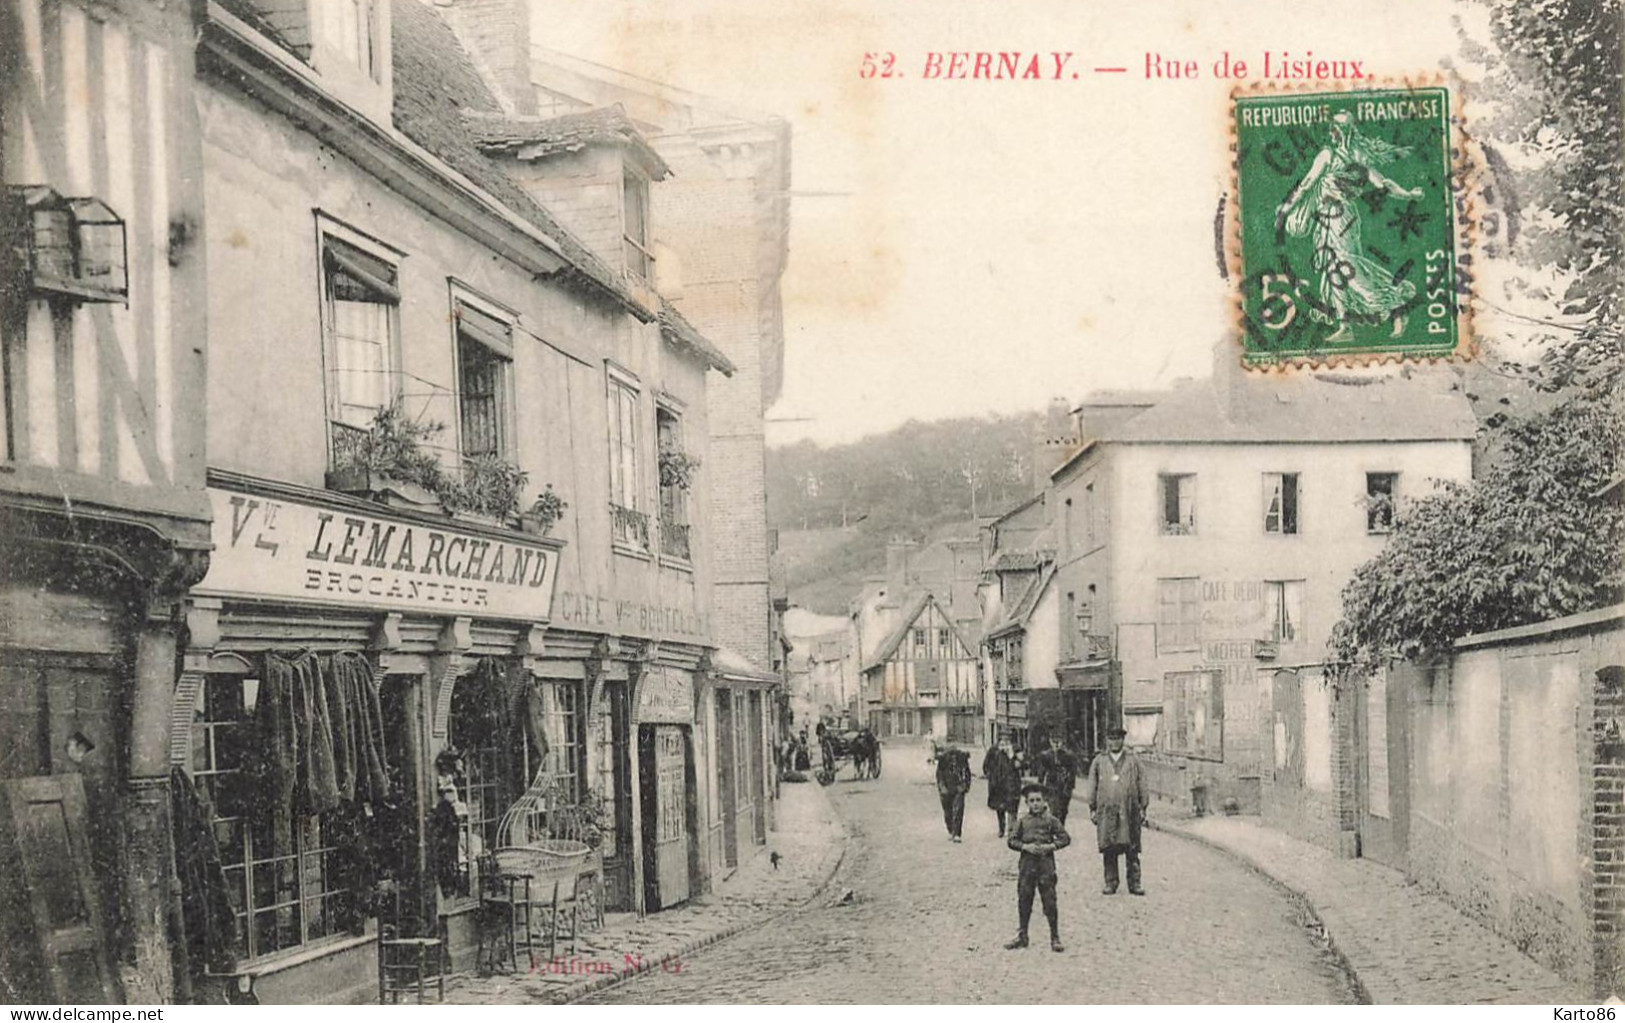 Bernay * 1908 * Rue De Lisieux * Brocanteur Vve LEMARCHAND Brocante * Café * Villageois - Bernay